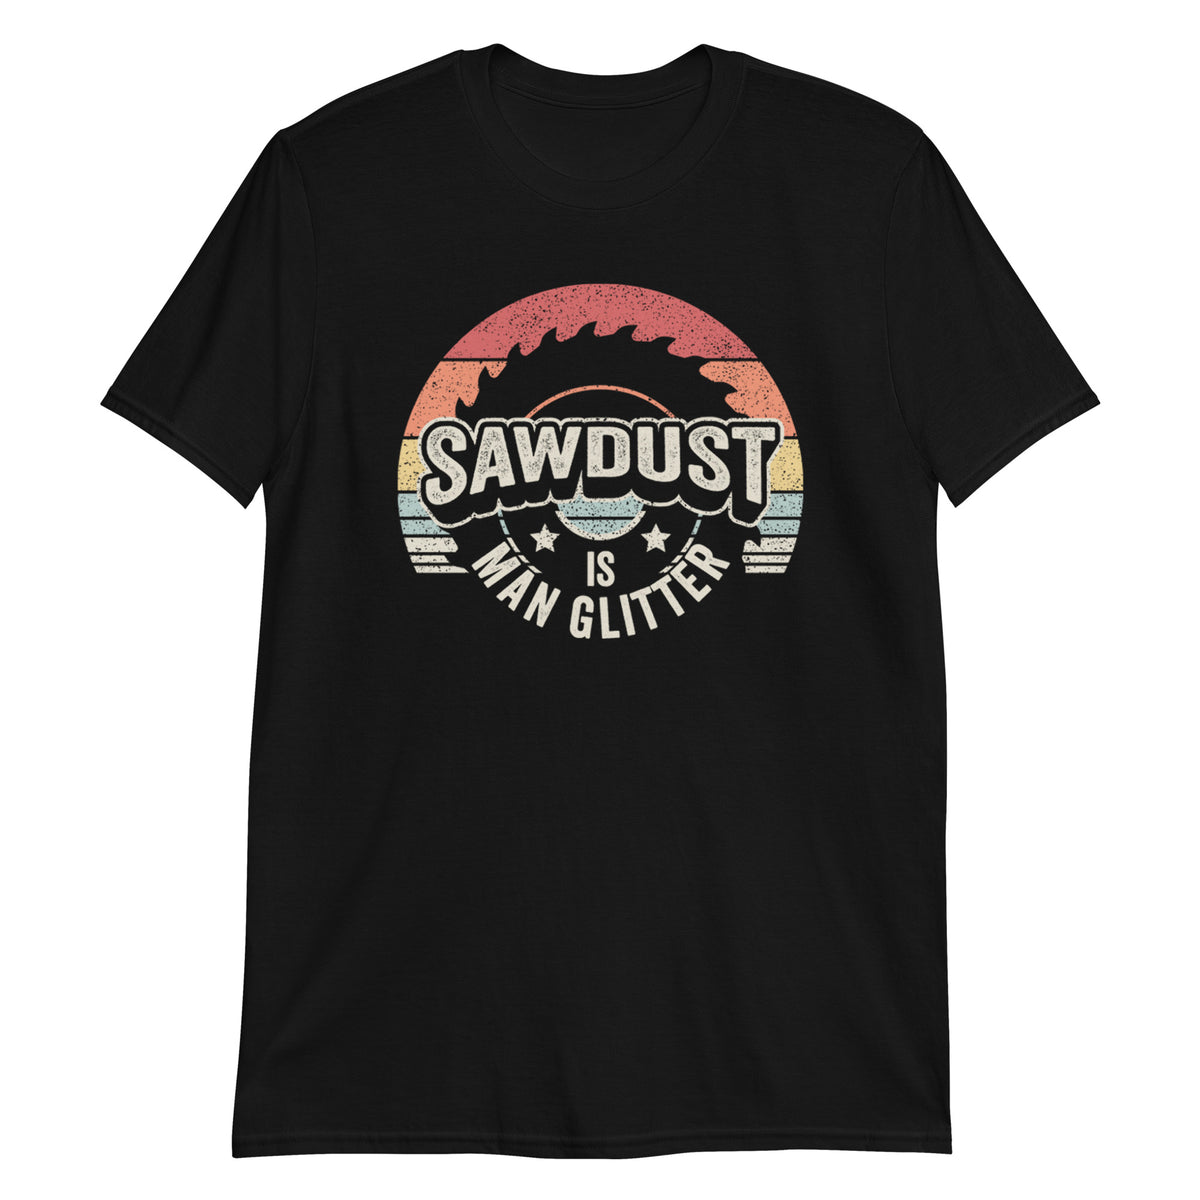 Sawdust is Man Glitter Carpenter & Woodworking Woodworker T-Shirt